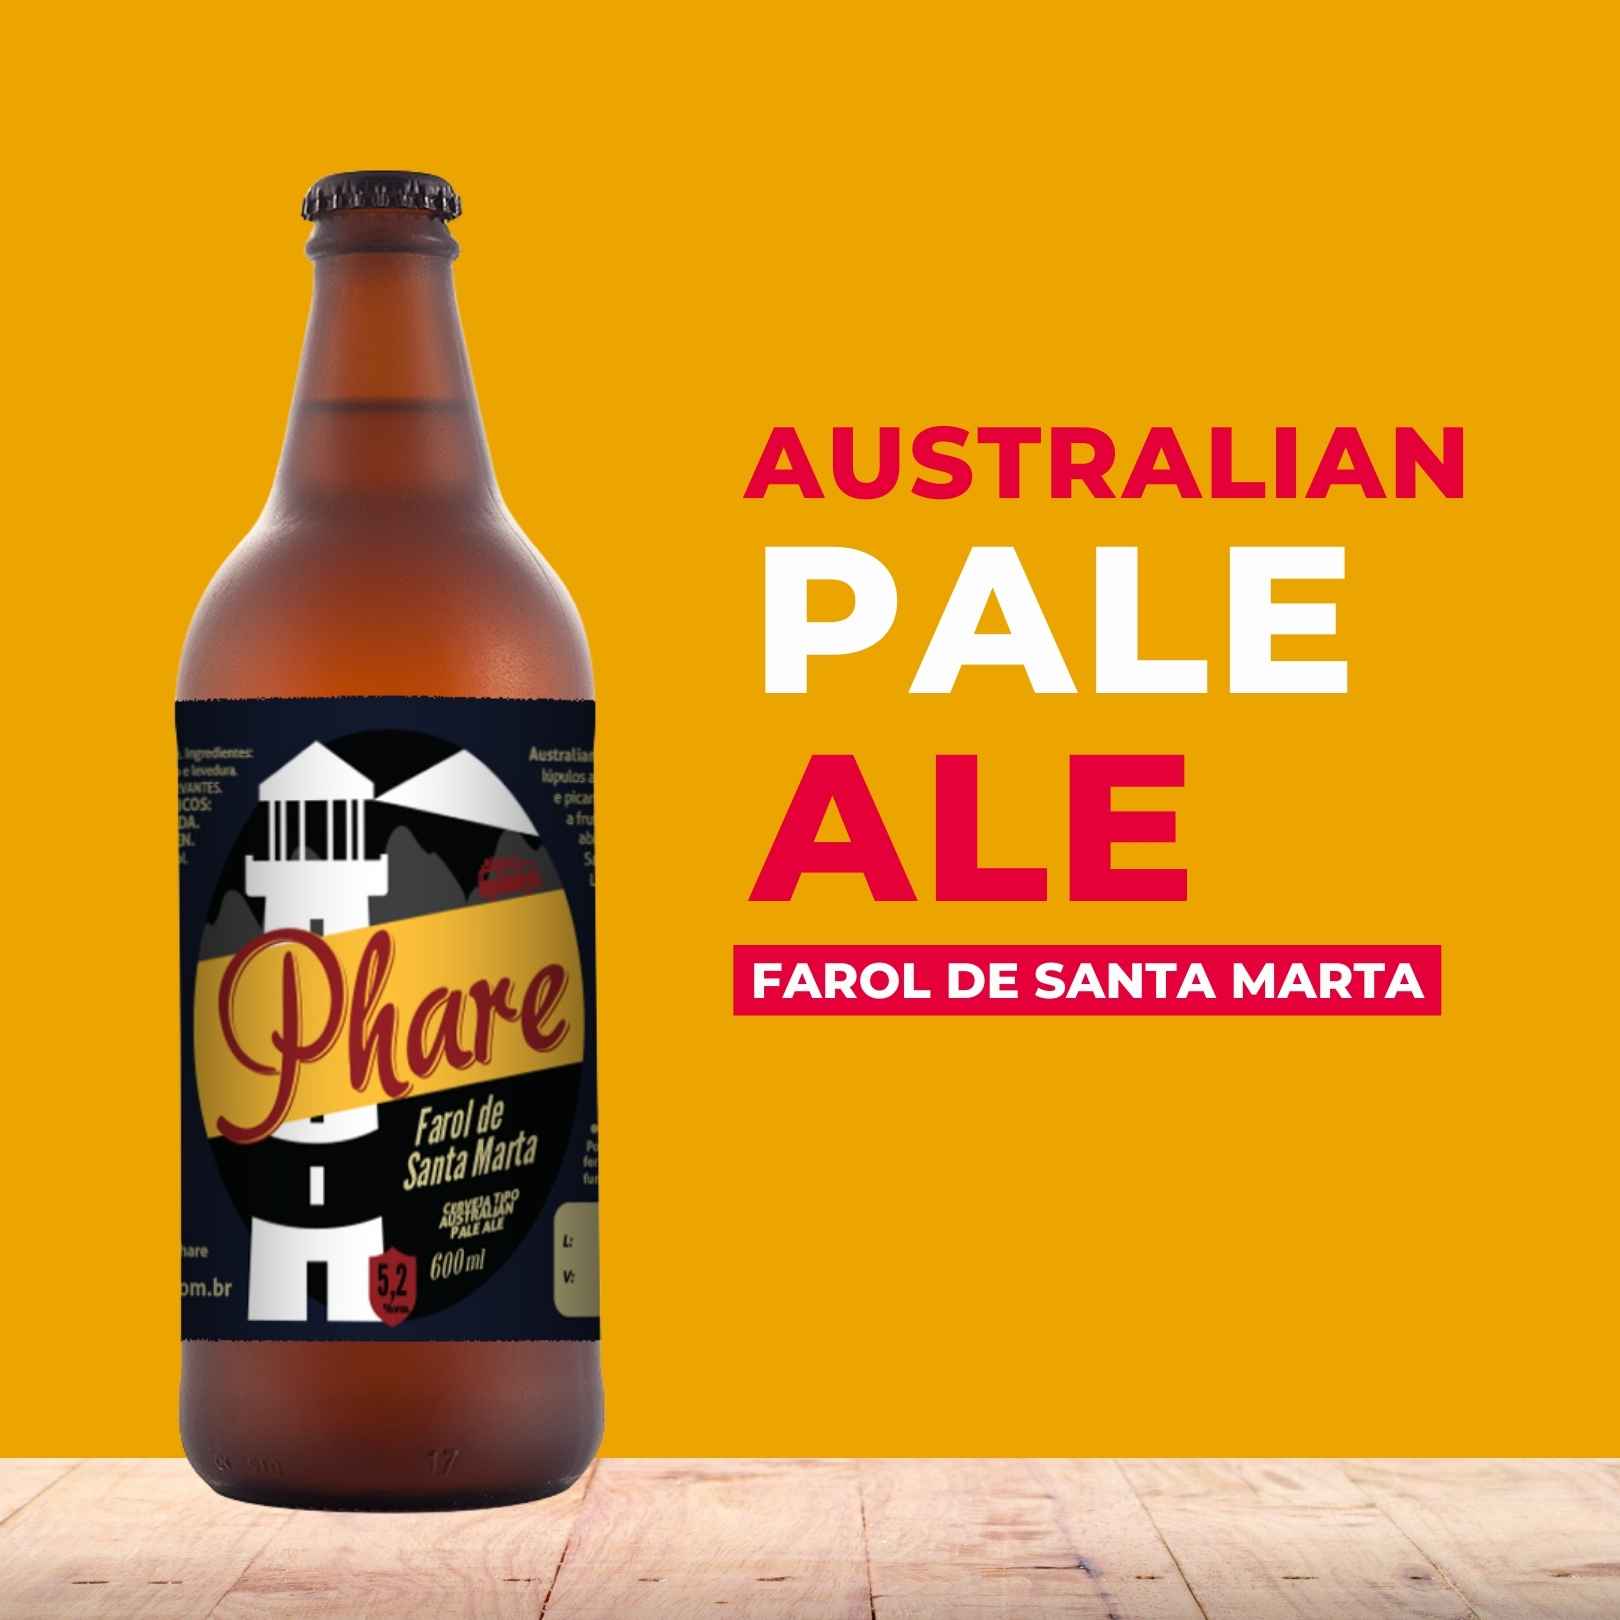 Cerveja 600ml - Farol de Santa Marta (Australian Pale Ale)